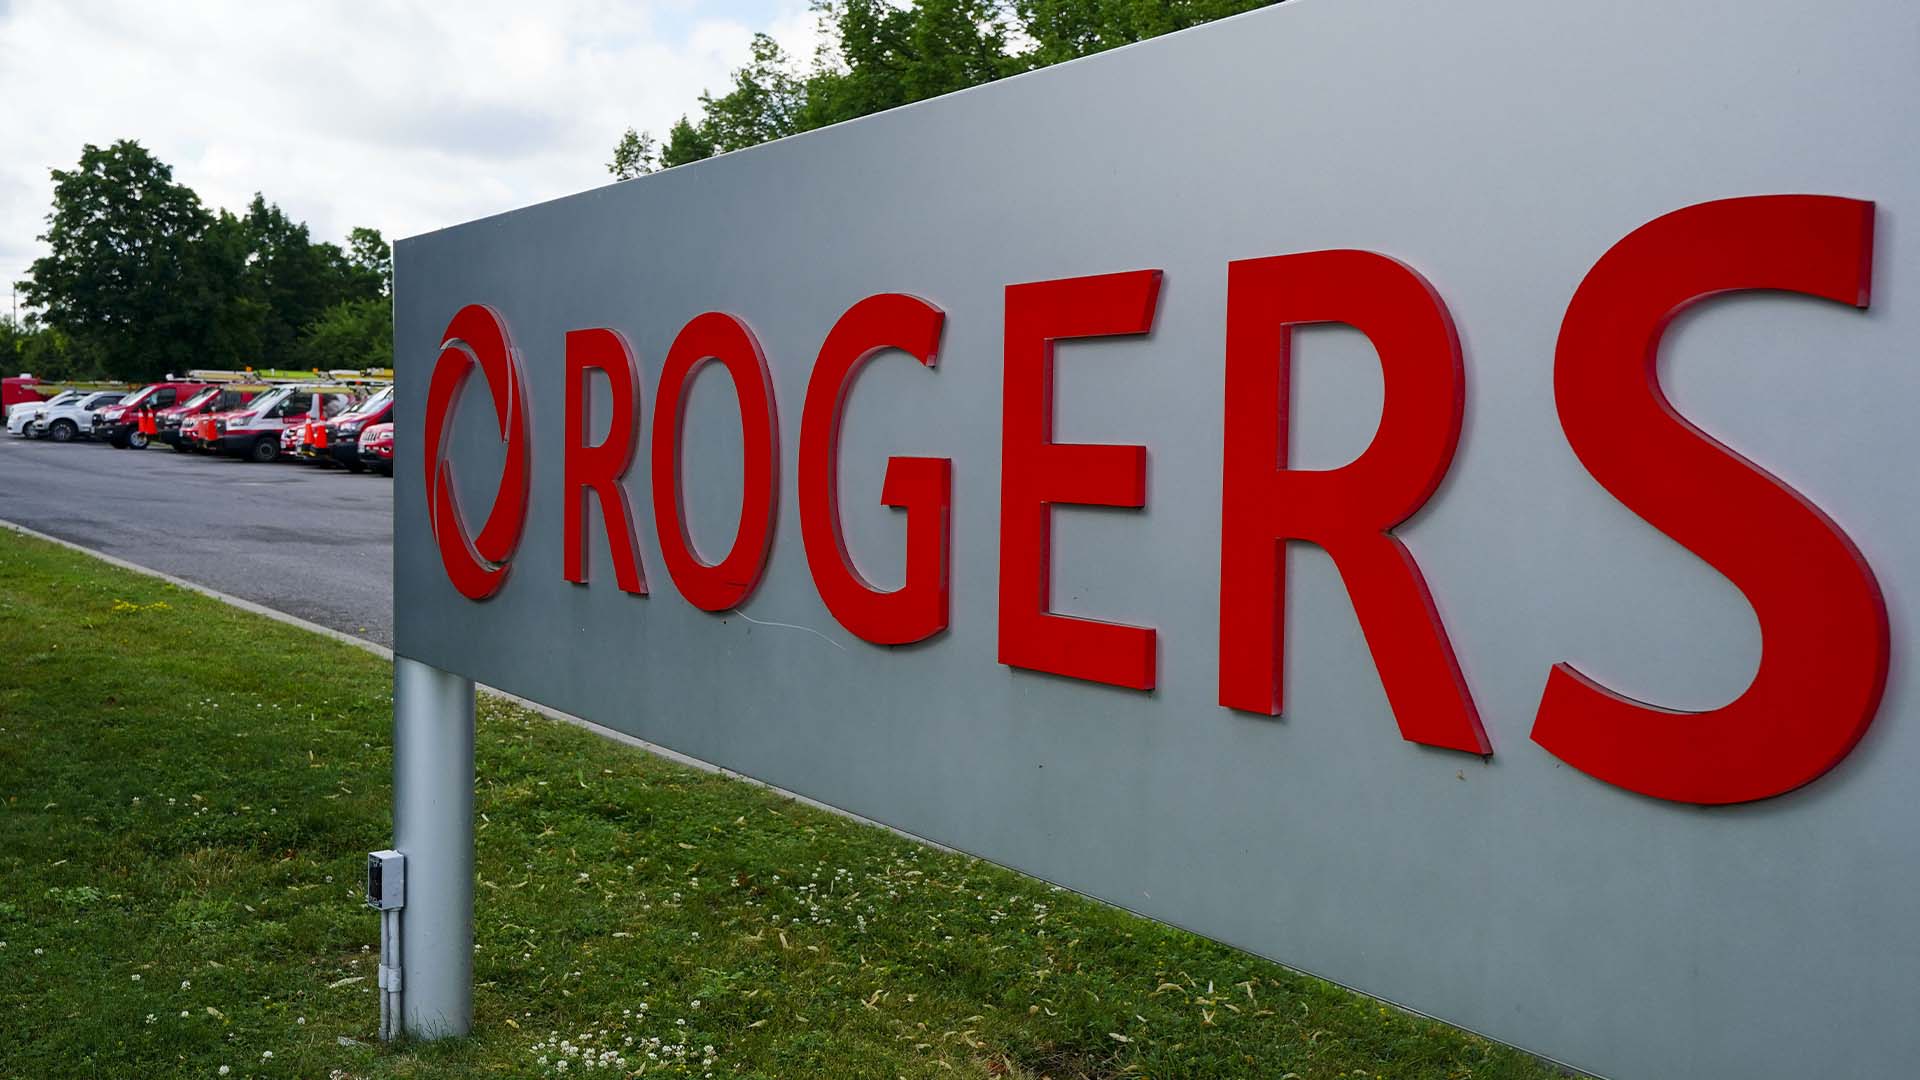 La panne a touché des millions de Canadiens, et pour s'assurer que cela ne se reproduise plus, Rogers engage 10 milliards $ sur trois ans pour des mises à niveau de réseau et dépensera 150 millions $ en crédits aux clients.